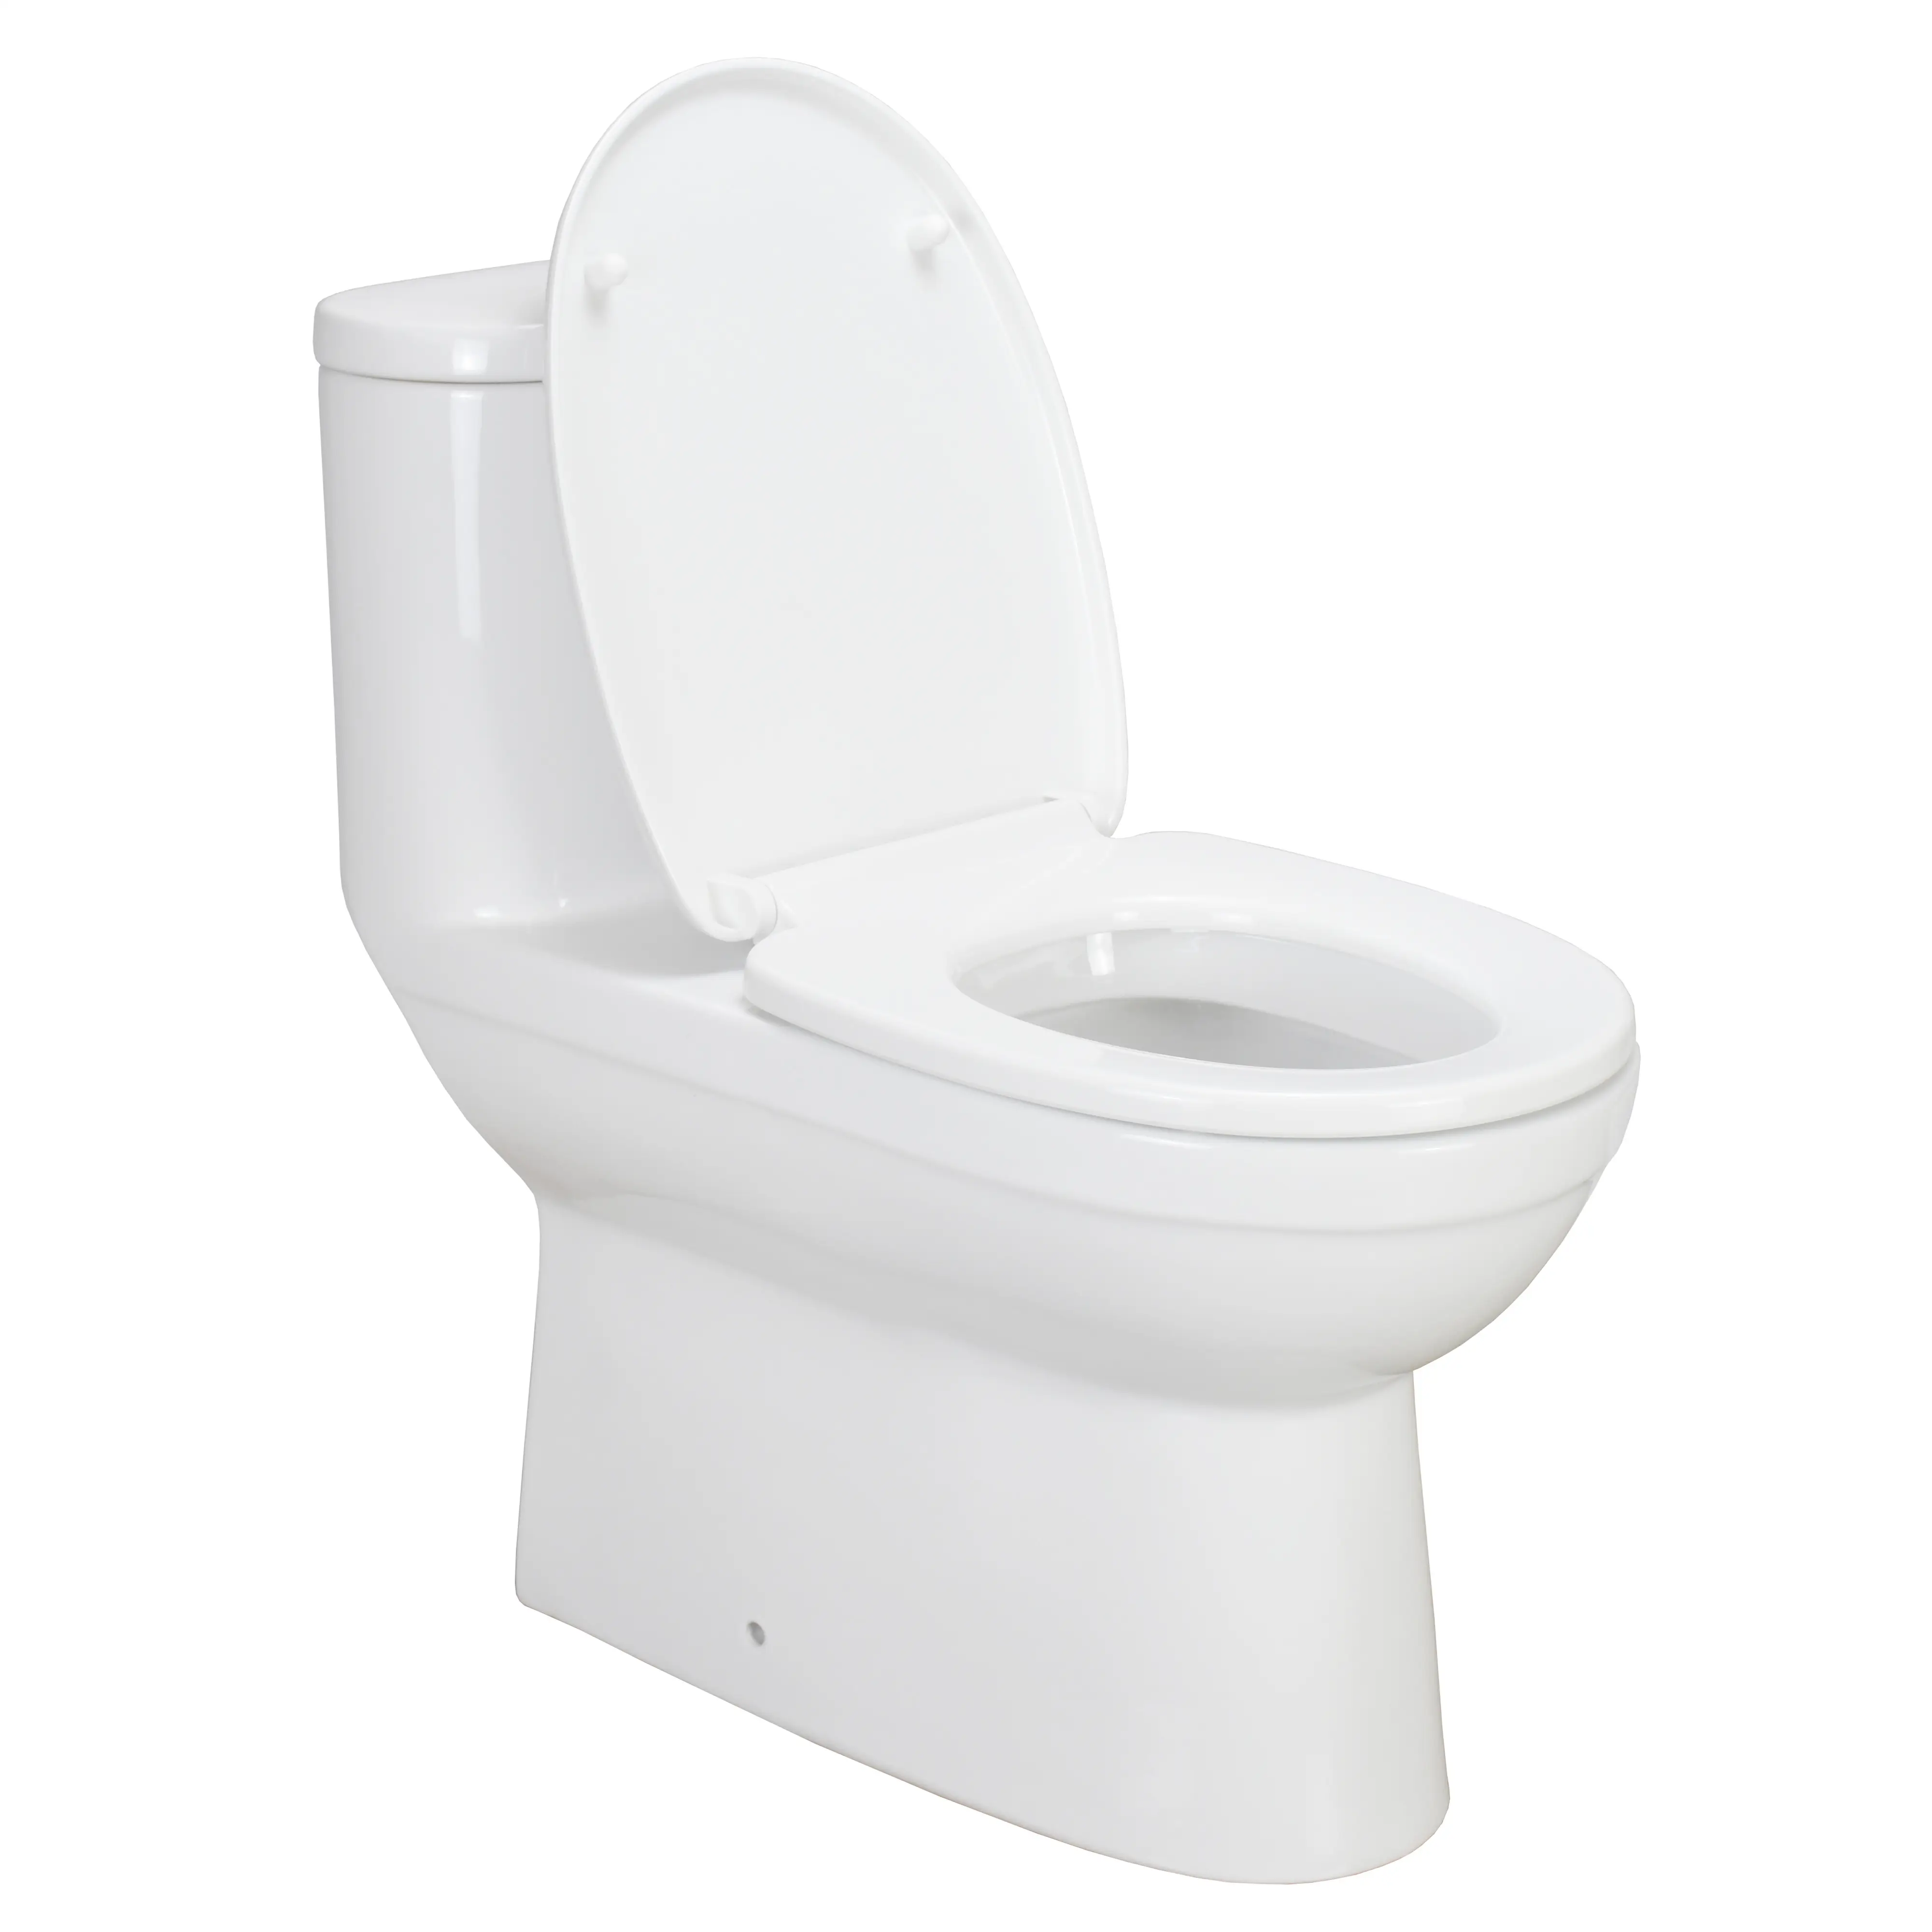 NL101 शीर्ष गुणवत्ता वाले चीनी मिट्टी शौचालय Wc आकार उच्च अंत मंजिल आउटलेट Siphonic एक टुकड़ा शौचालय